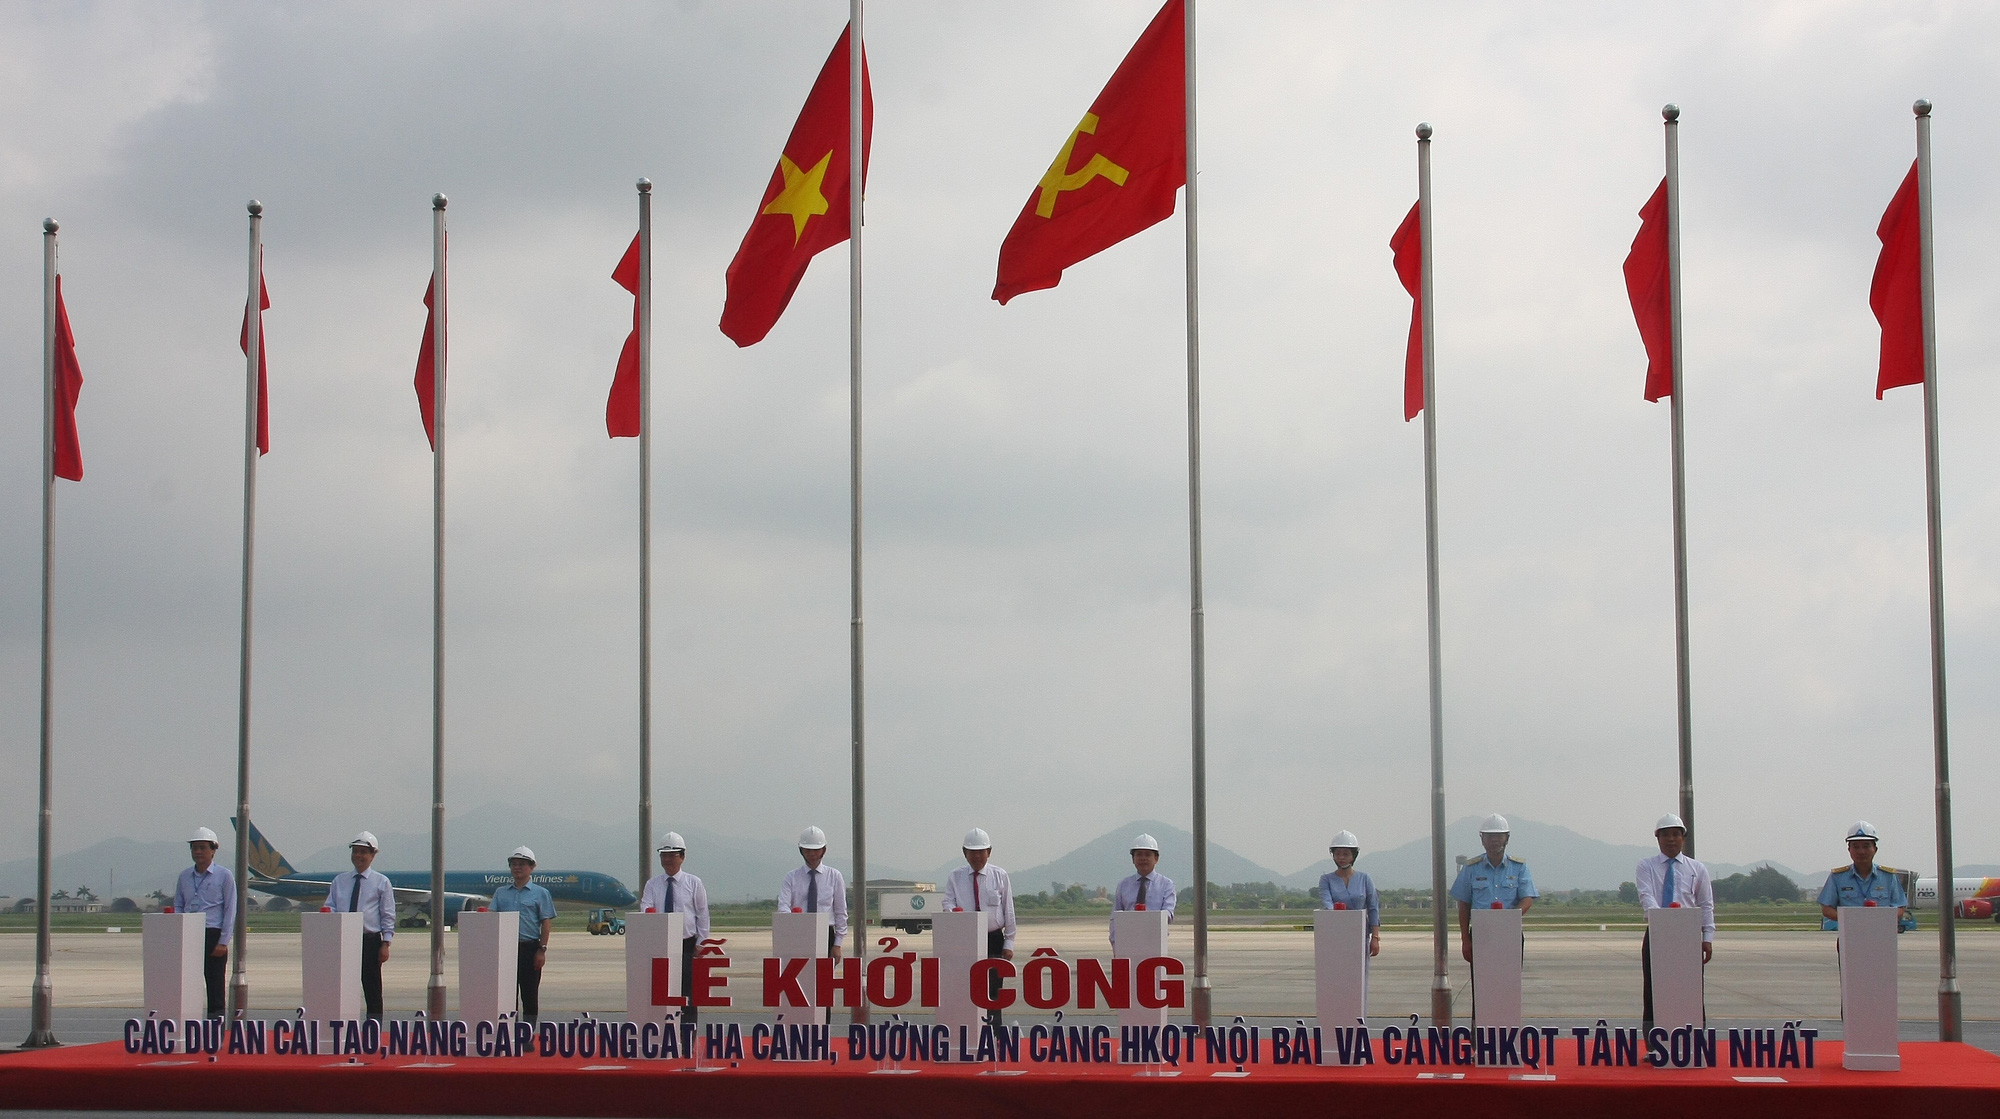 Phó Thủ tướng Trương Hòa Bình dự khởi công dự án sửa chữa đường băng sân bay Nội Bài, Tân Sơn Nhất - Ảnh 1.